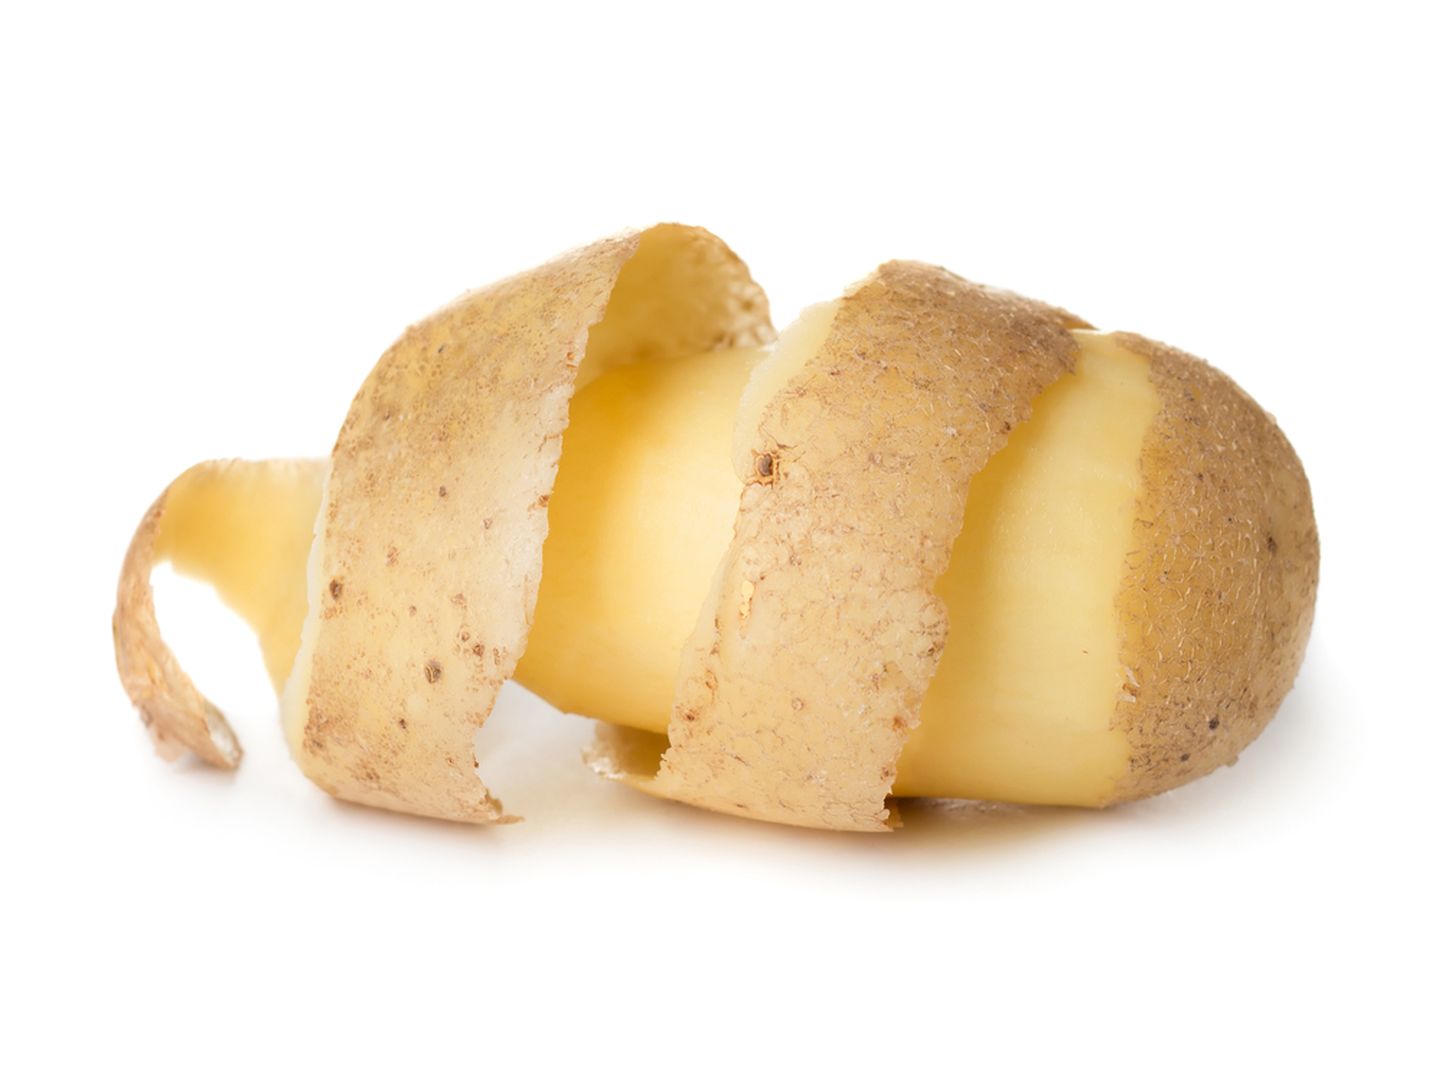 Kooritud kartul. Foto on illustatiivne